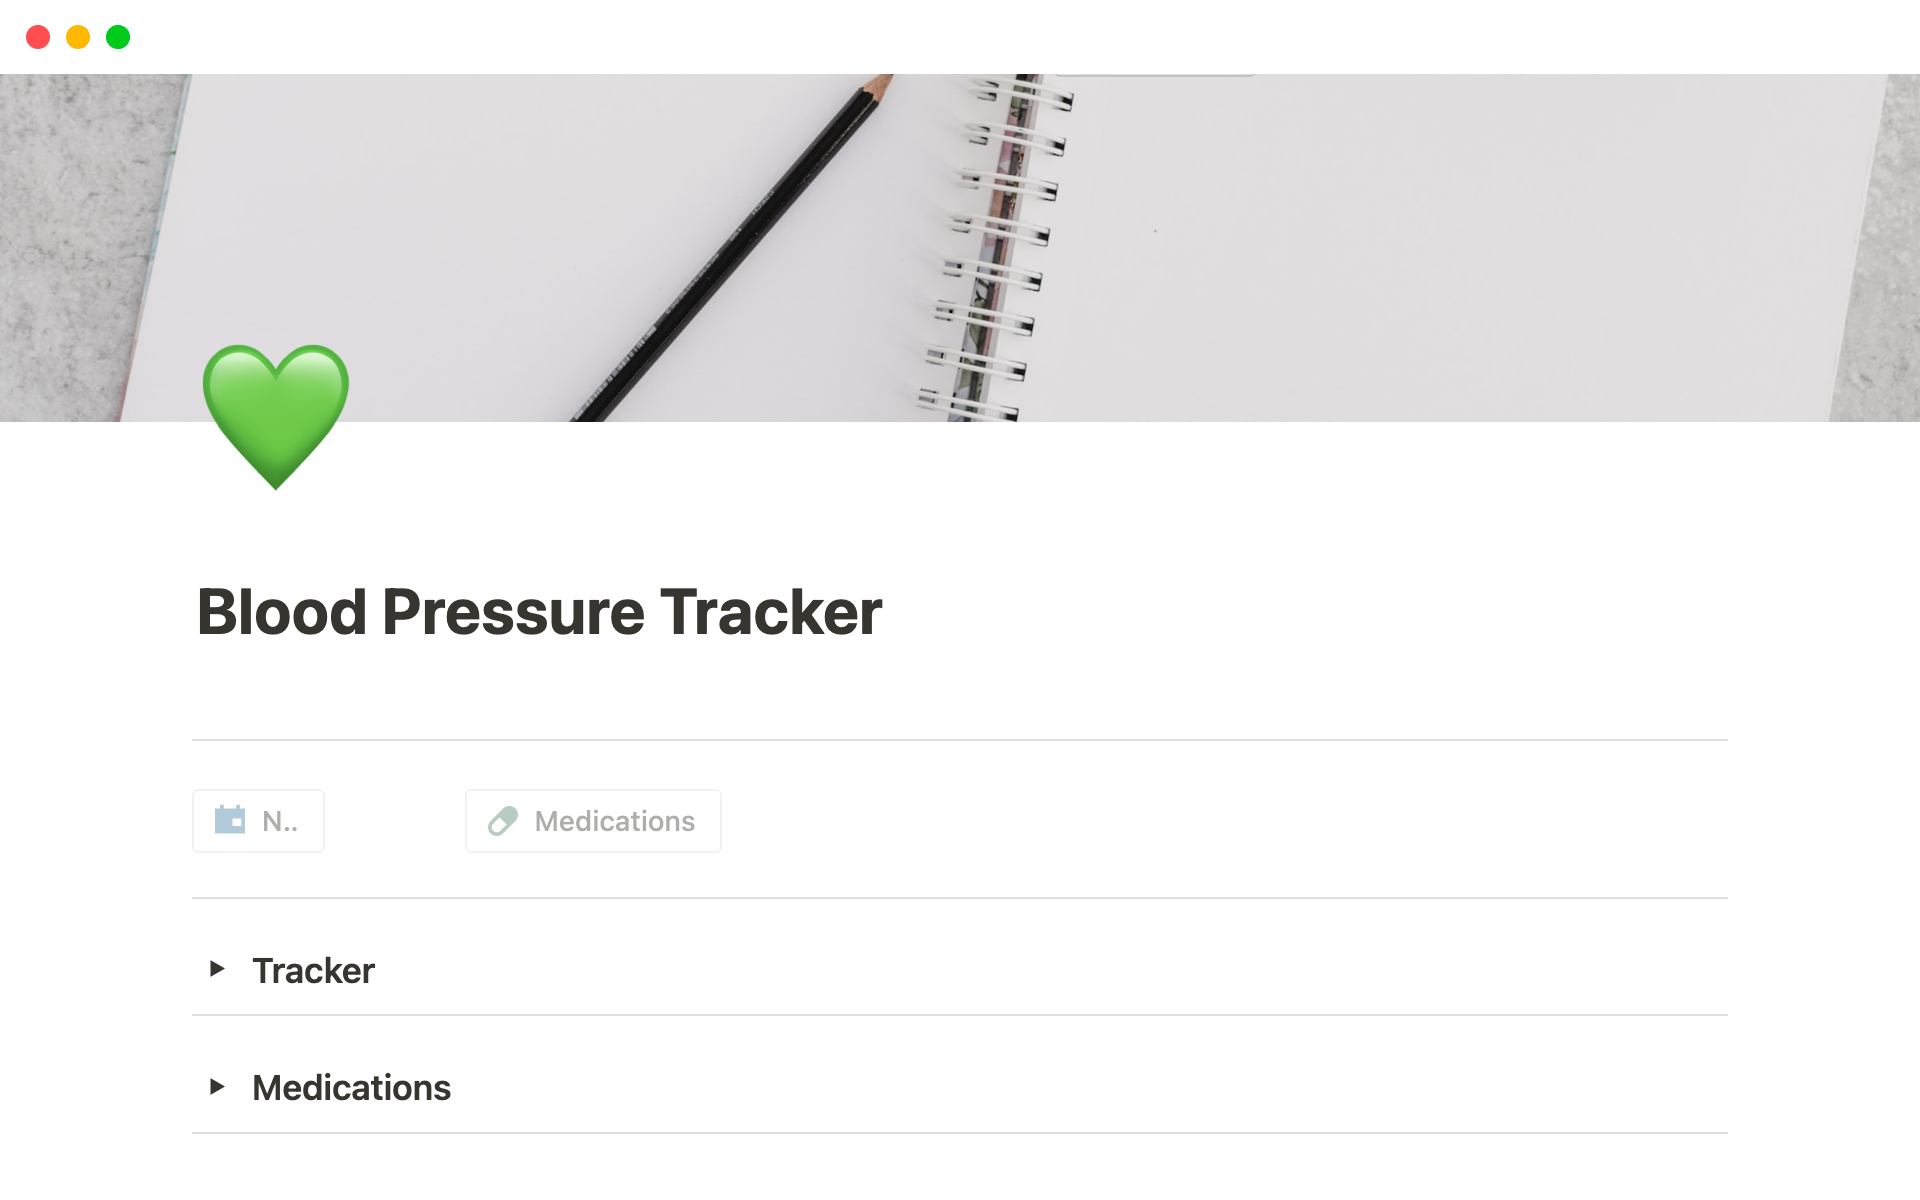 Aperçu du modèle de Blood Pressure Tracker